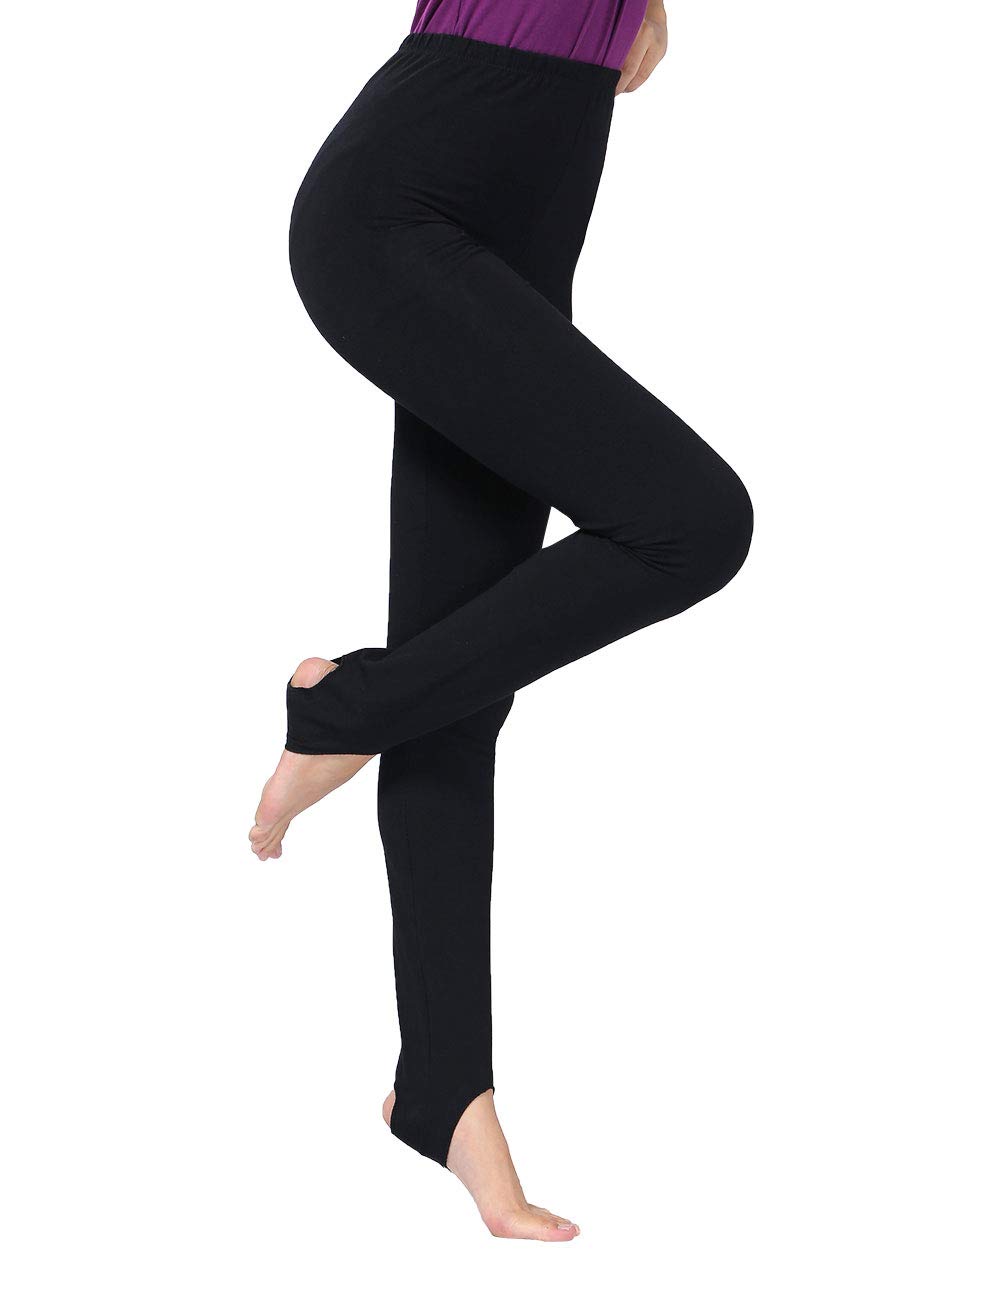 Stirrup Leggings Shiny Nylon Lycra Black-Dance Gymnastics Twirling